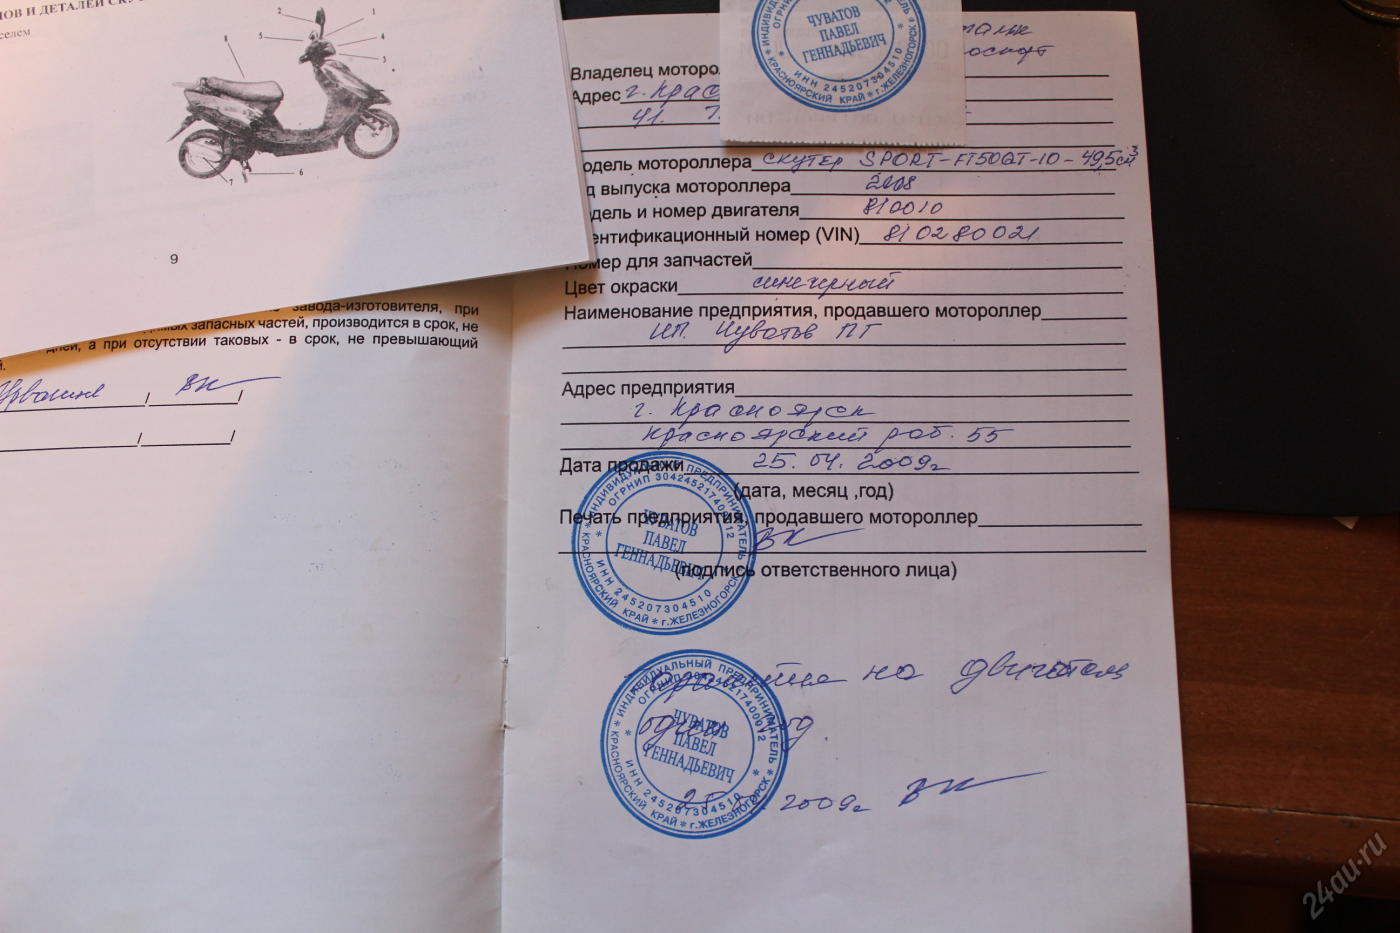 Нужны ли документы на скутер на 50 кубов? :: syl.ru